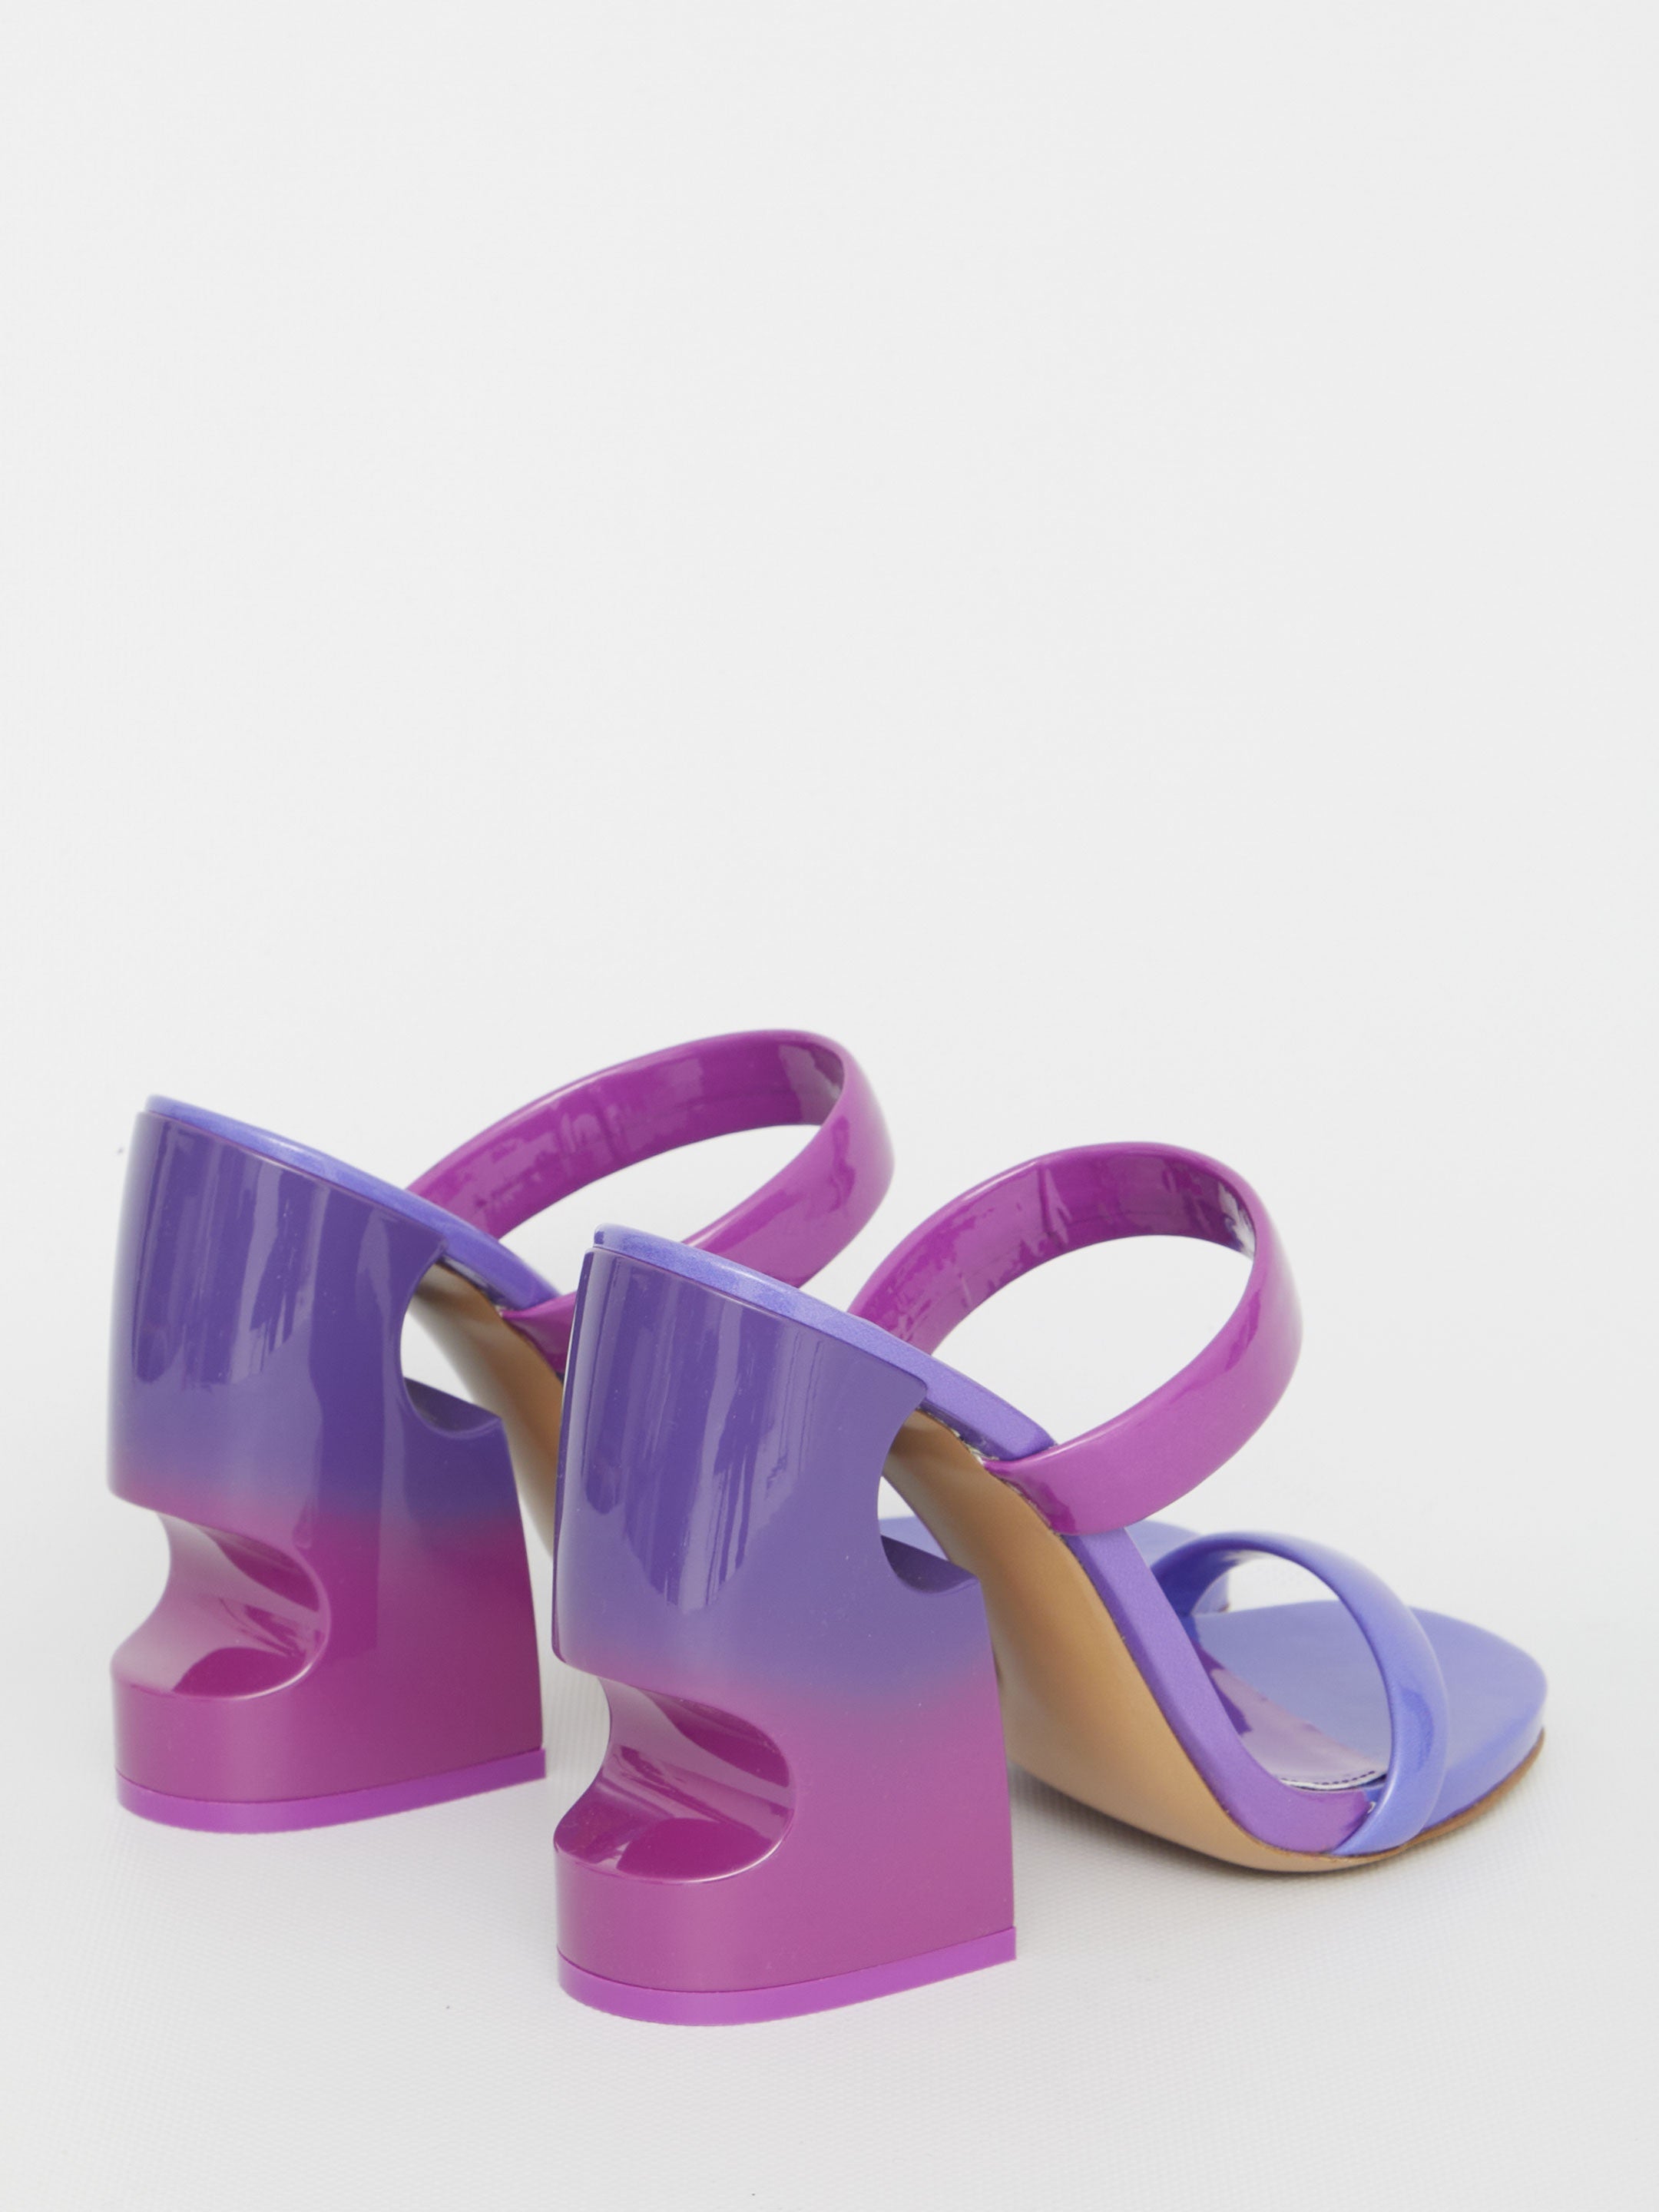 Dégradé sandals with Meteor heel